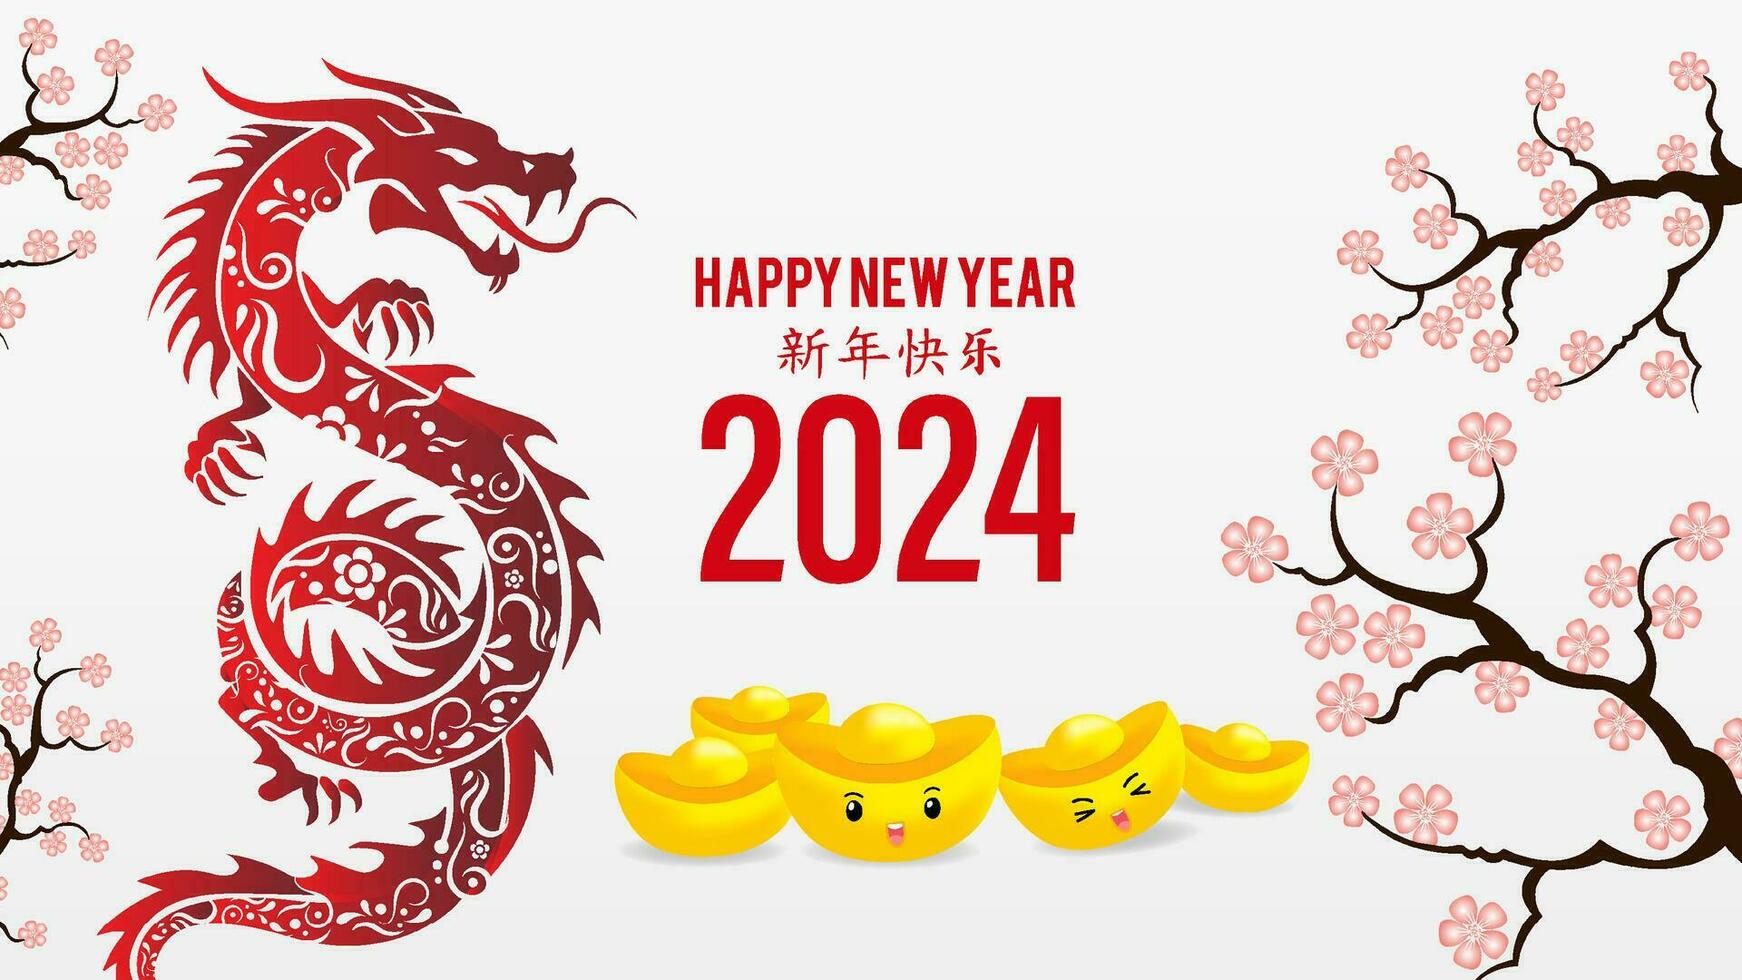 Chinese nieuw jaar ontwerp poster vector. gelukkig Chinese nieuw jaar achtergrond vector